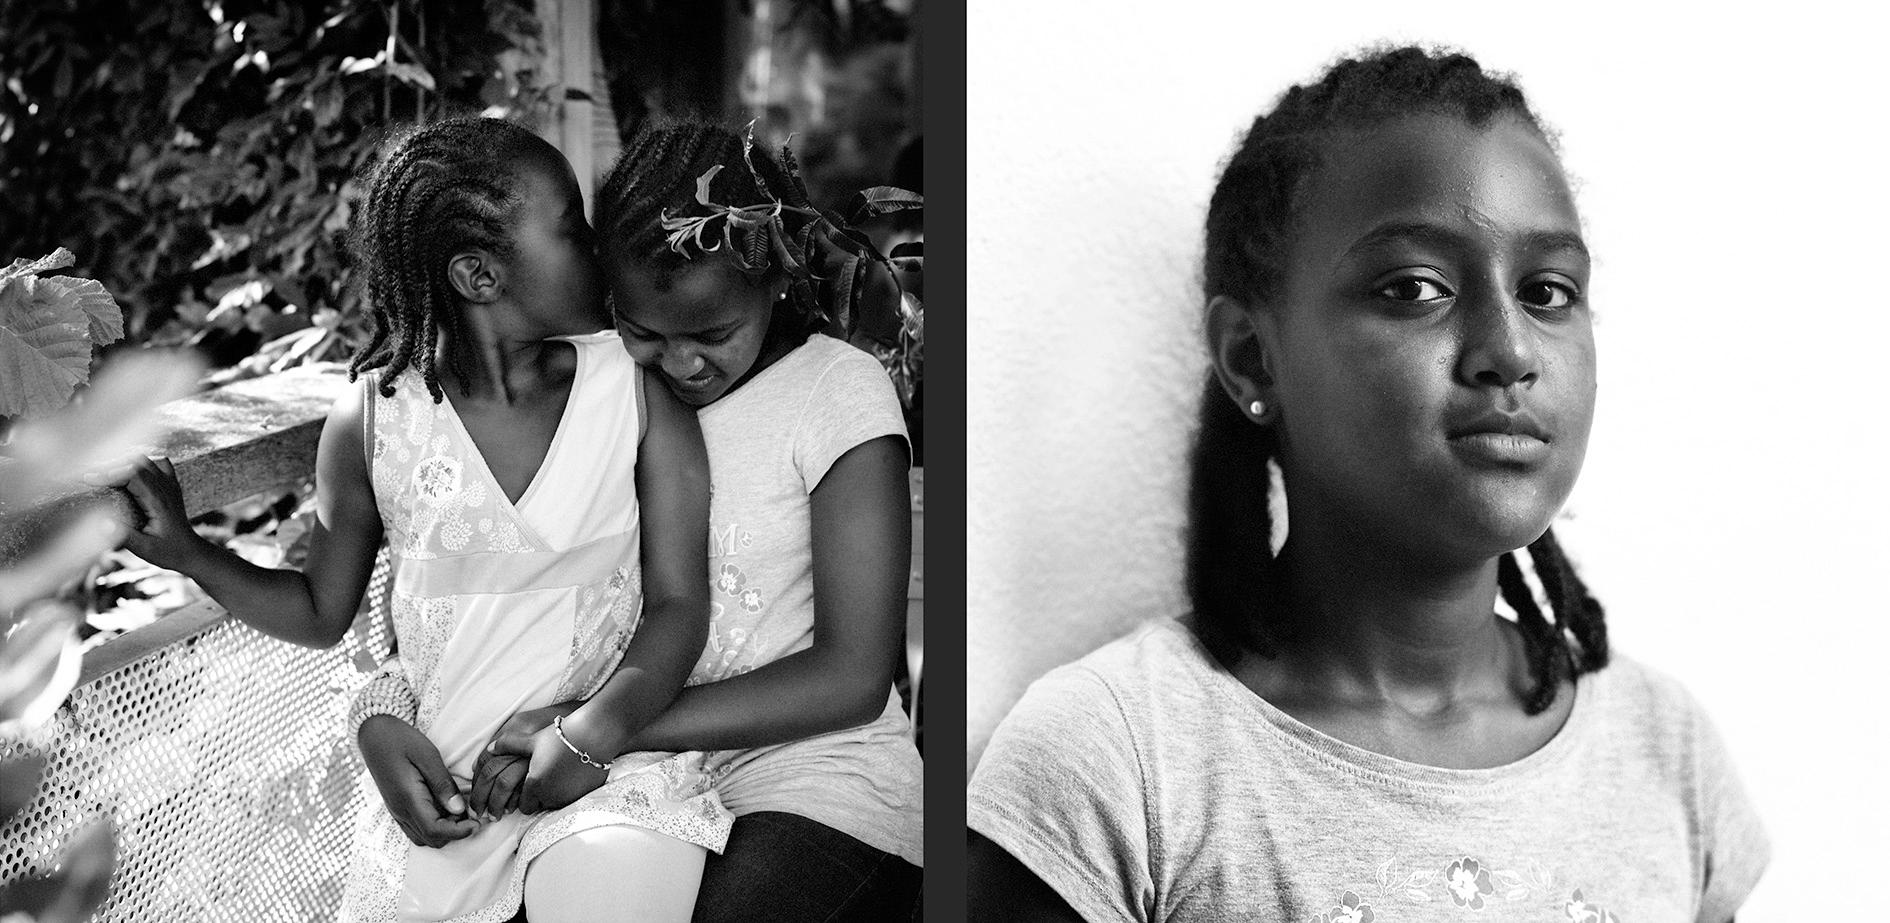 Zwei afrikanische Mädchen beim Flüstern. Portrait afrikanisches Mädchen.